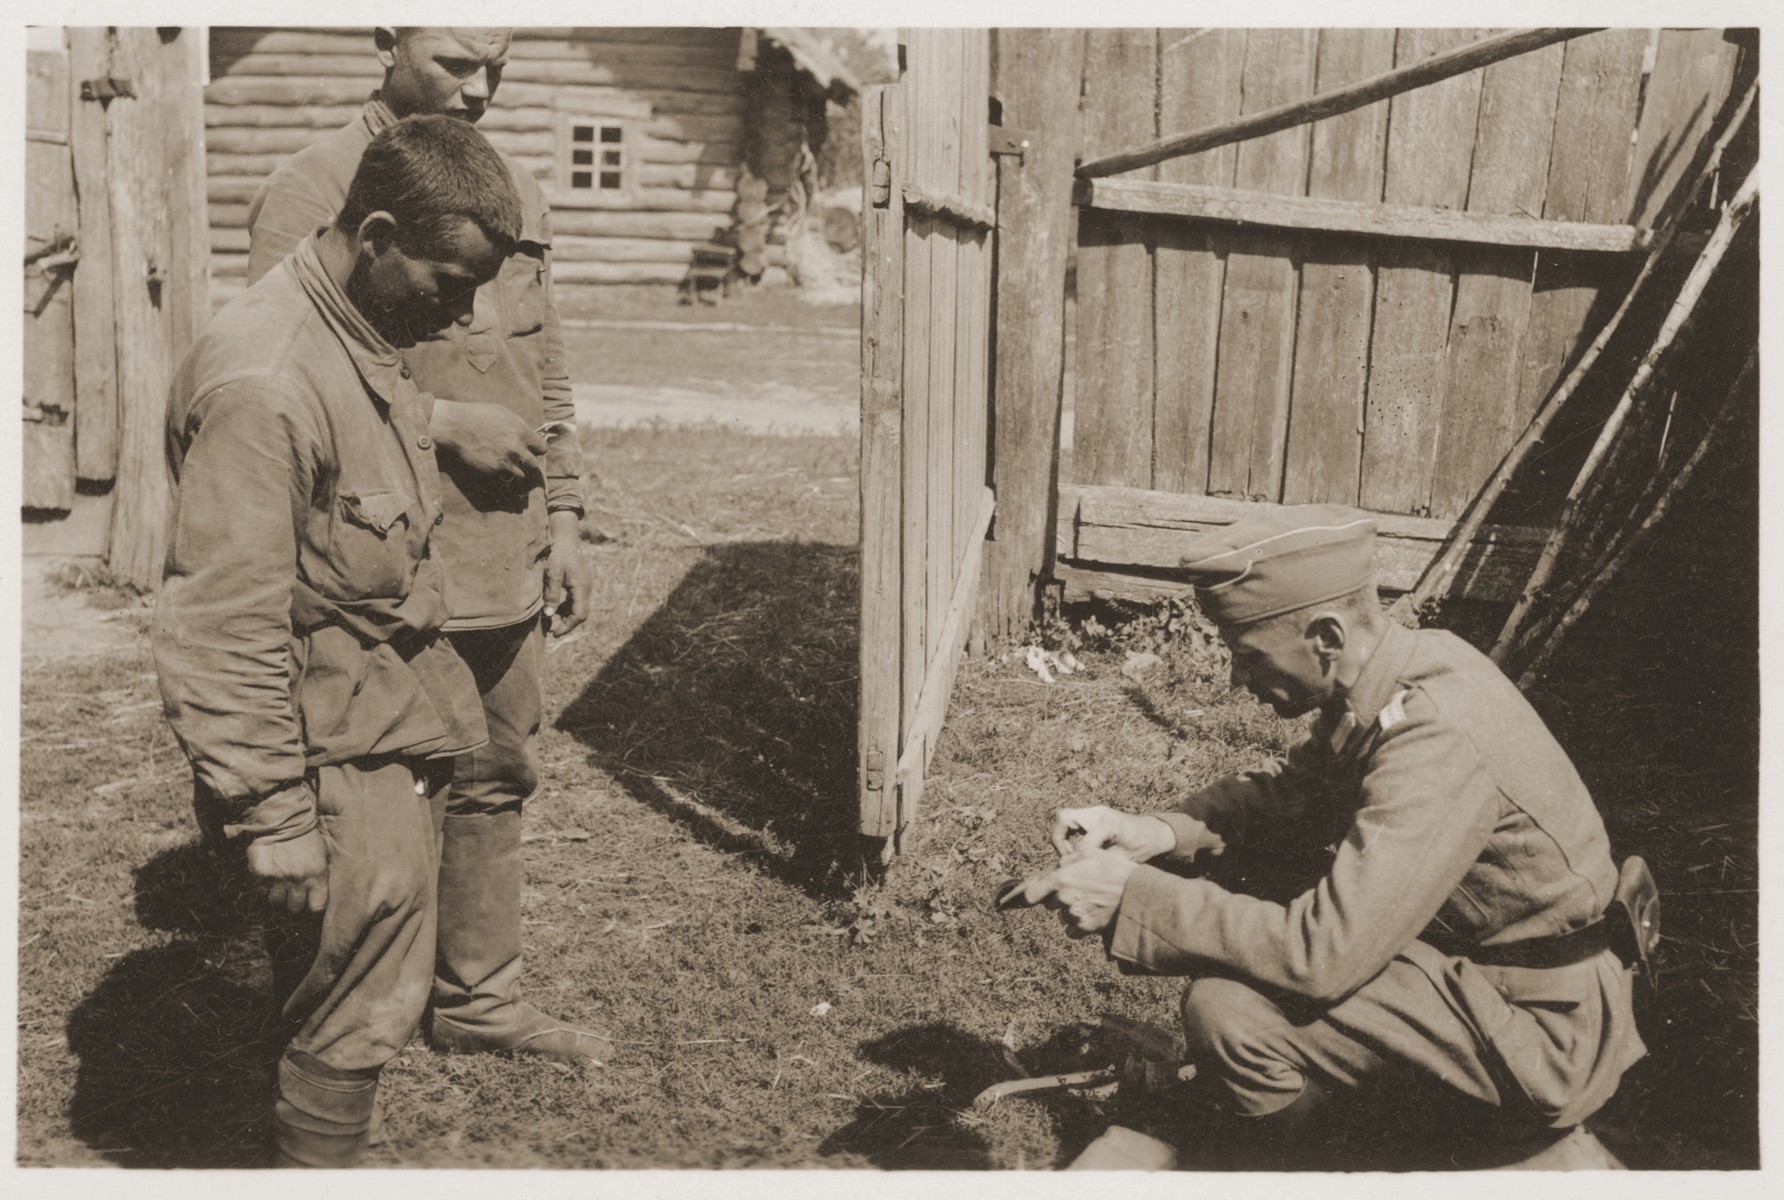 A German officer interrogates captured Soviet soldiers.